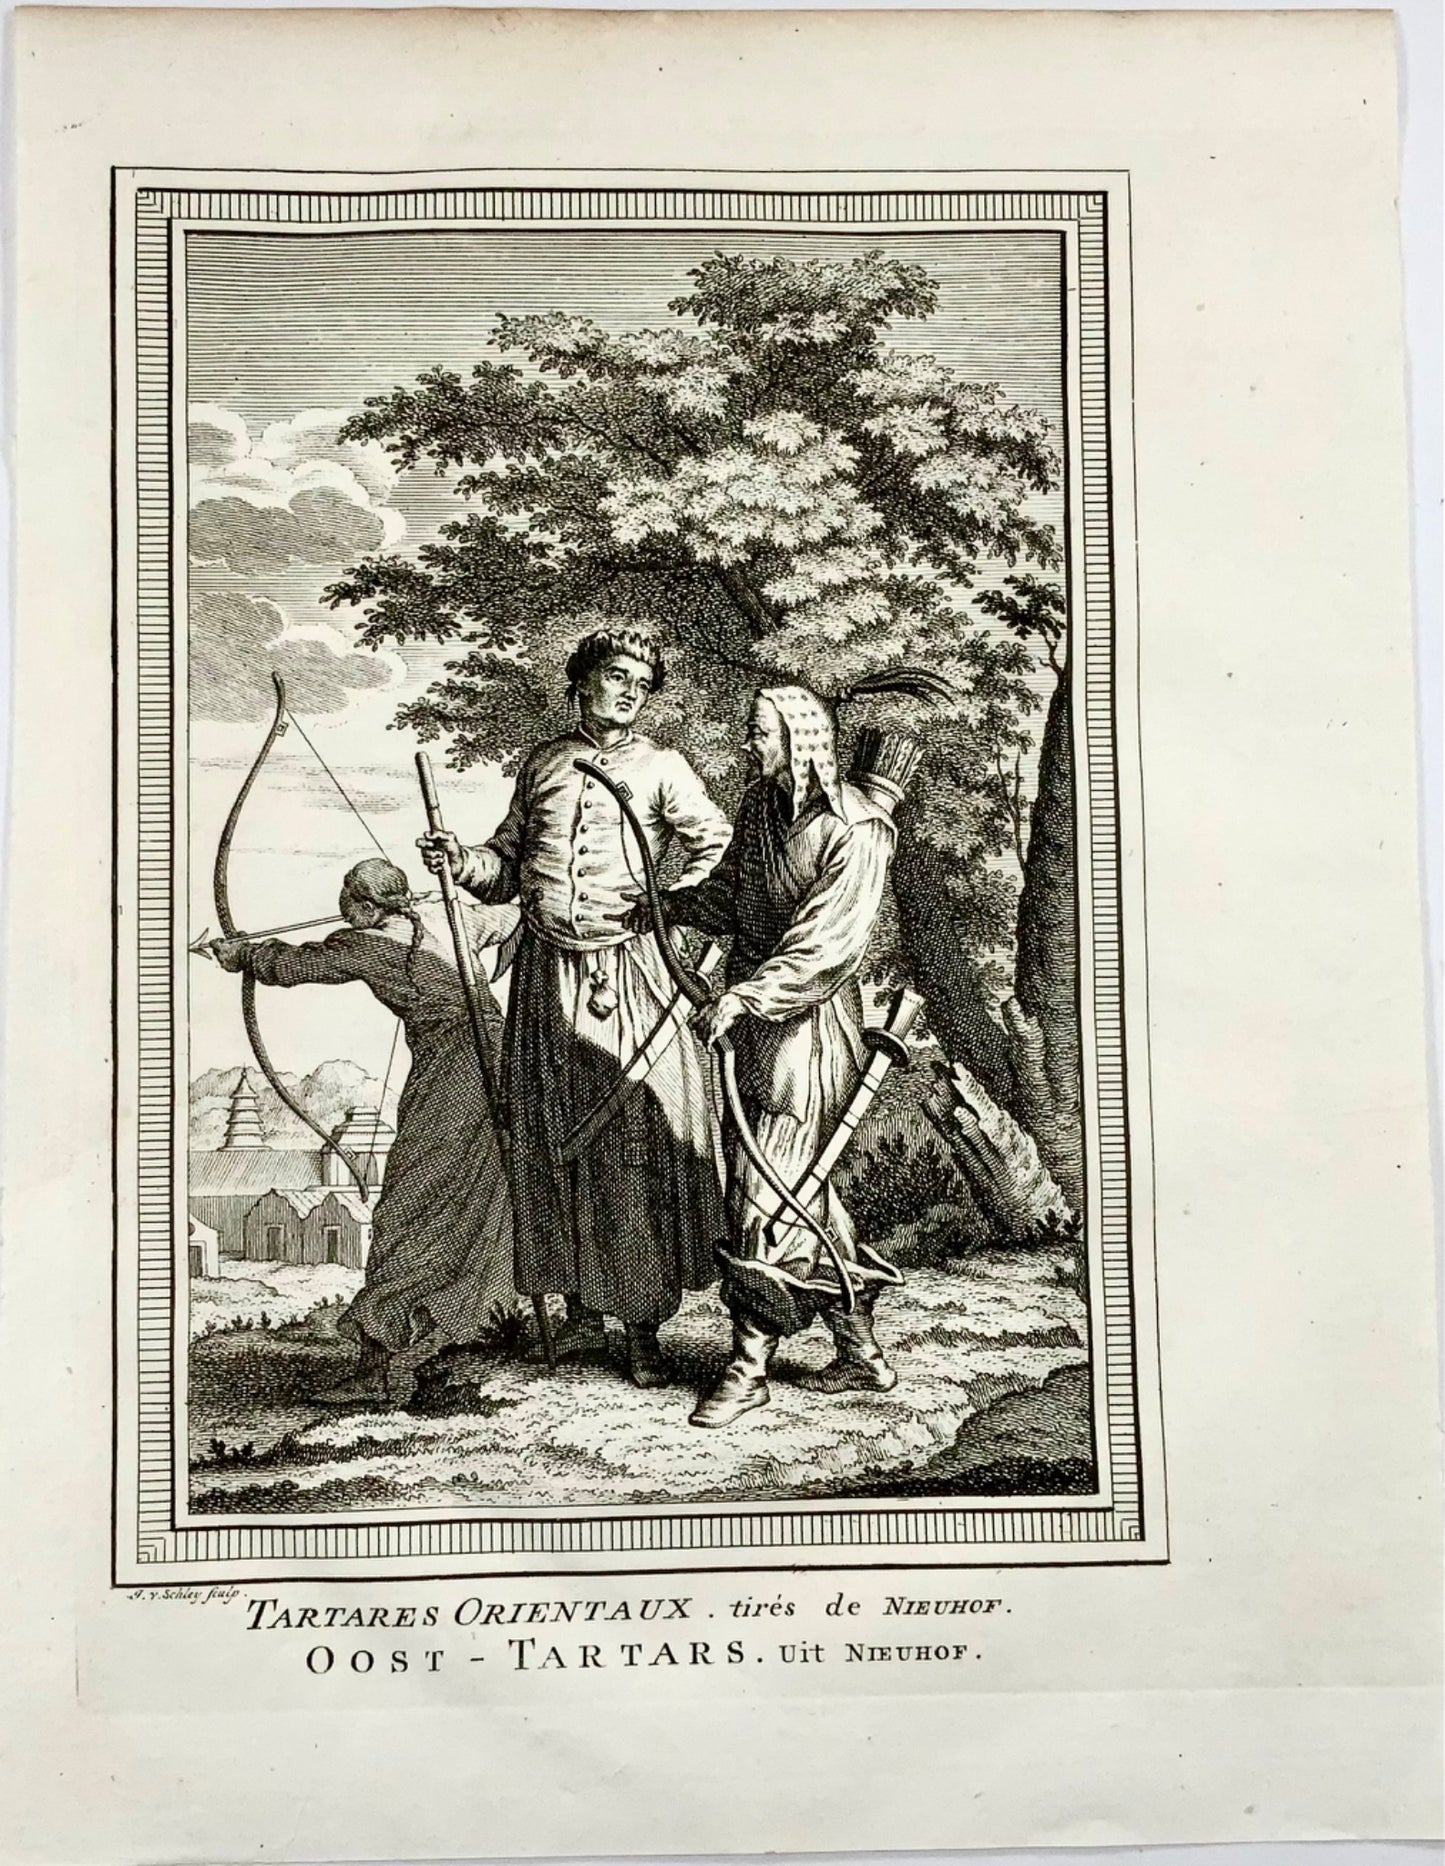 1749 J. Von Schley, Oriental Tartars taken from Nieuhof, ethnographic